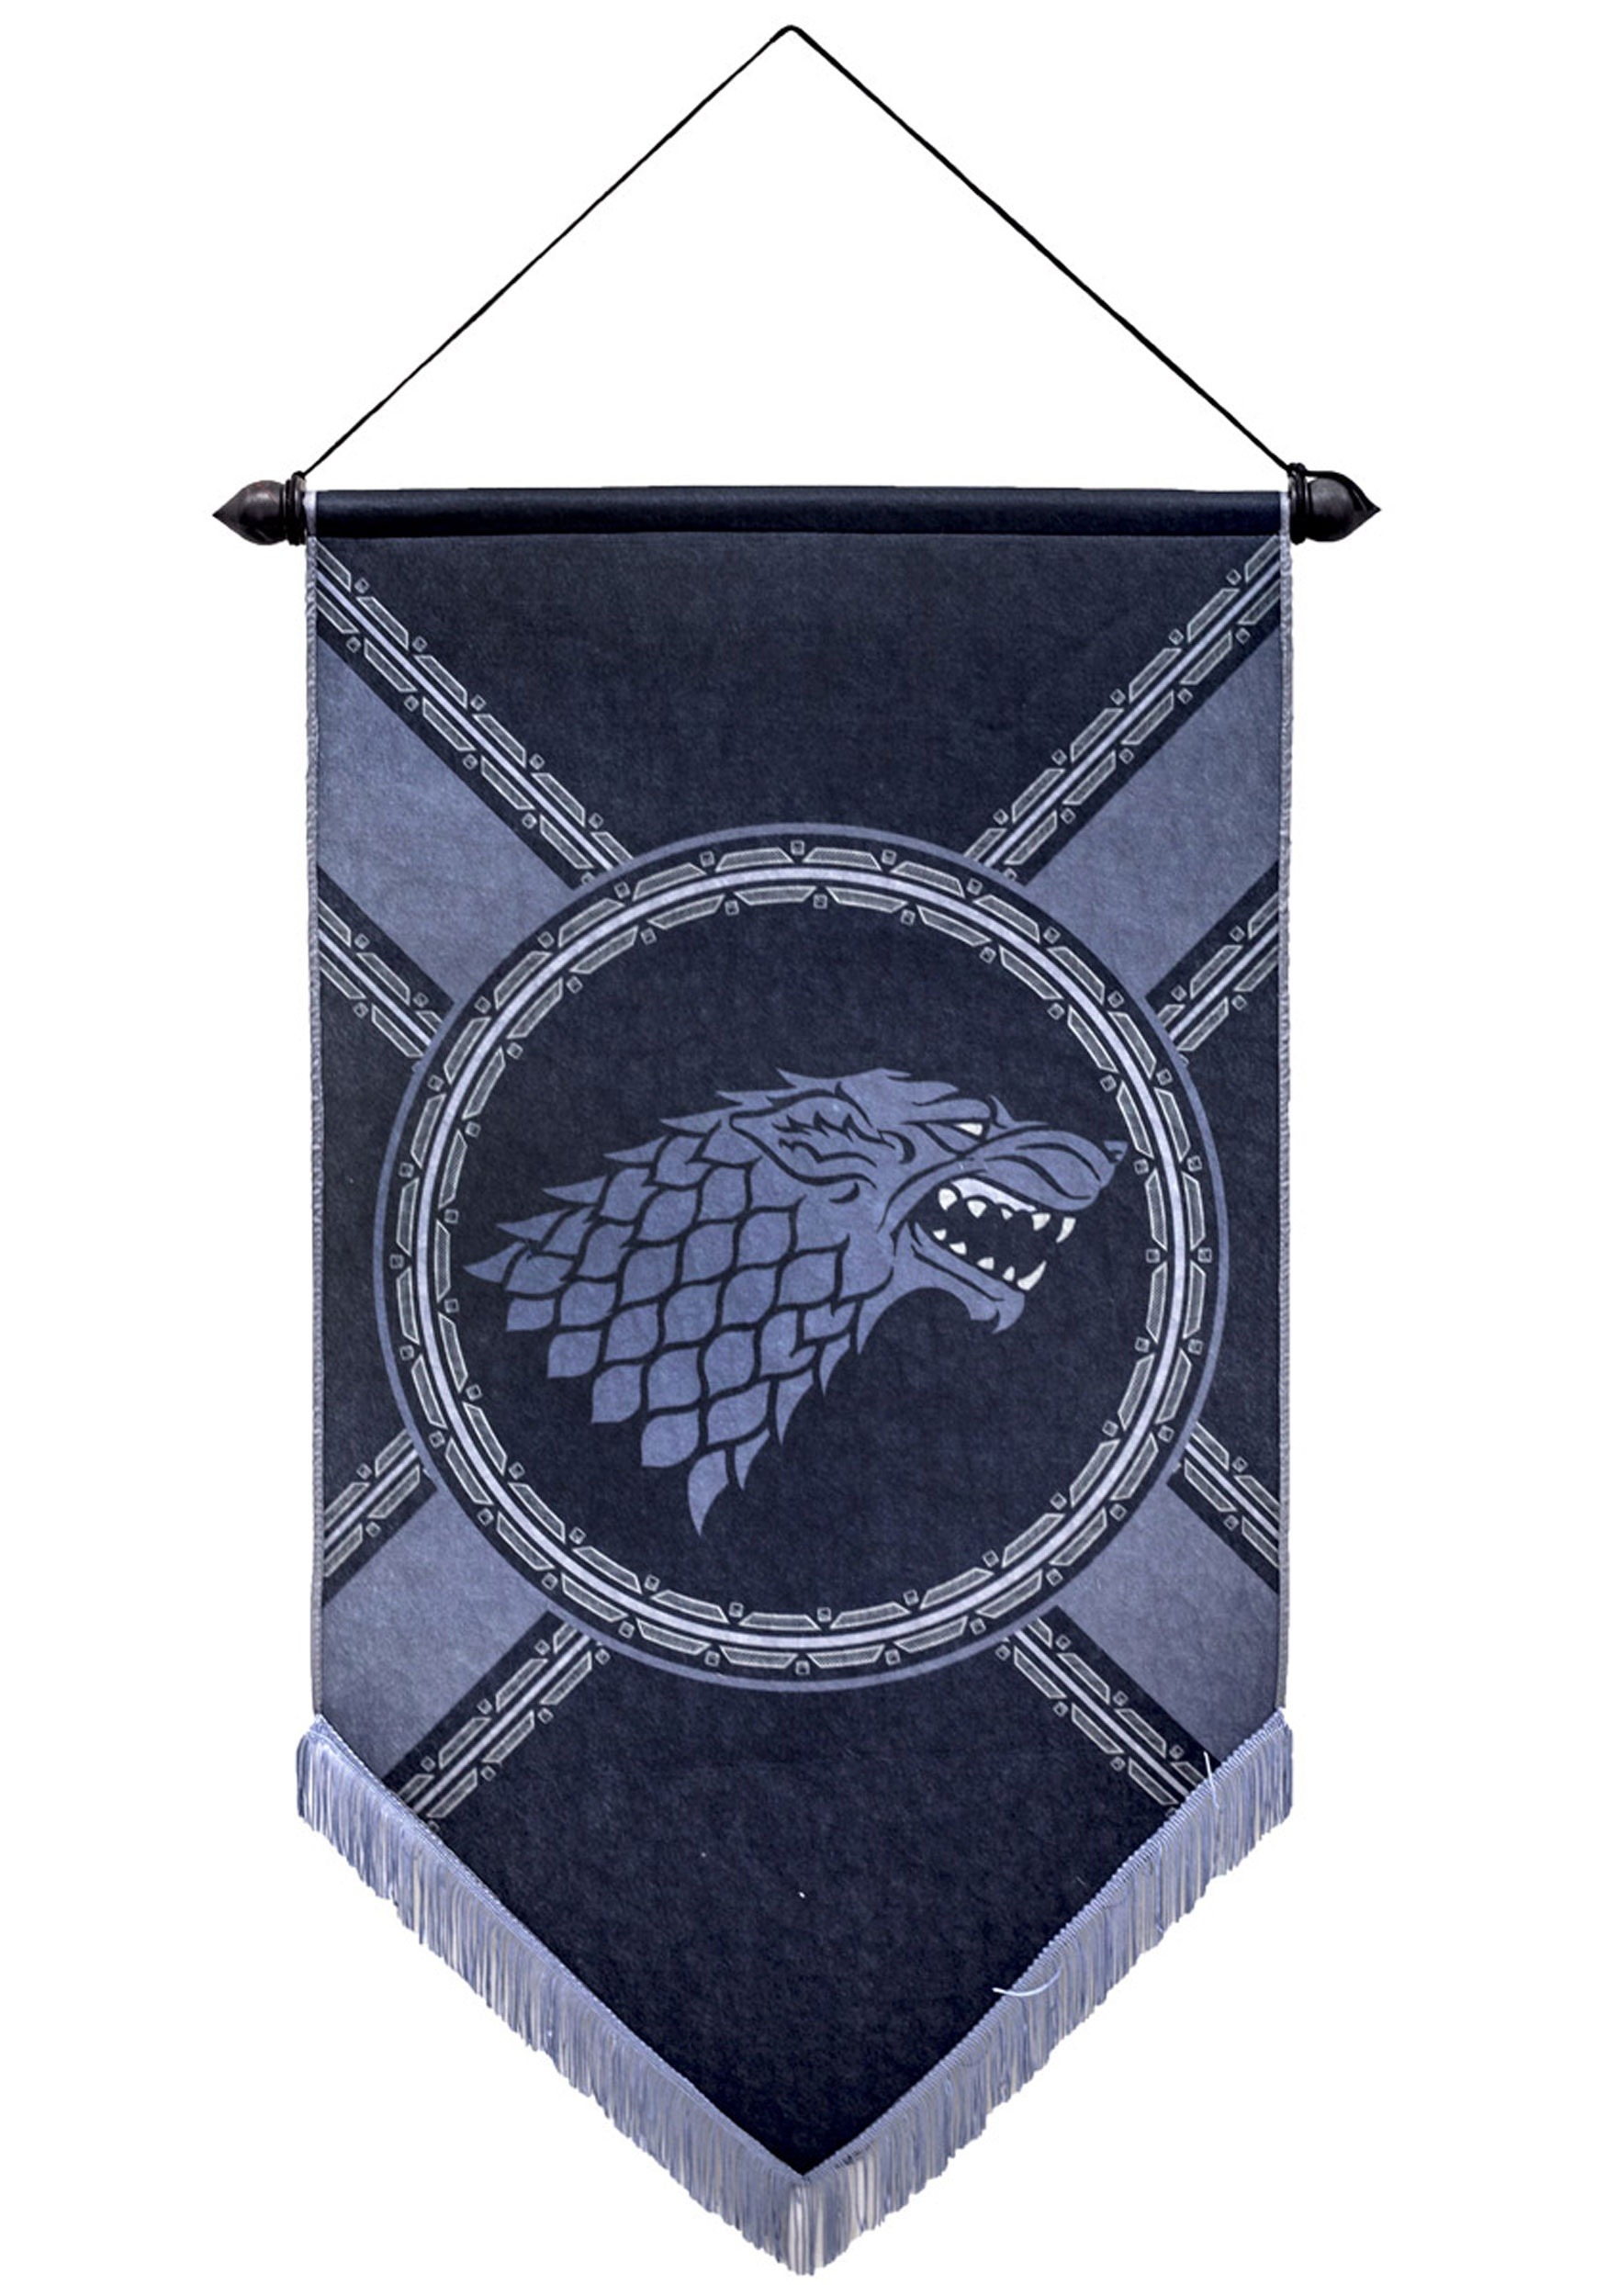 House Stark 21" x 36" Felt Banner from Game of Thrones